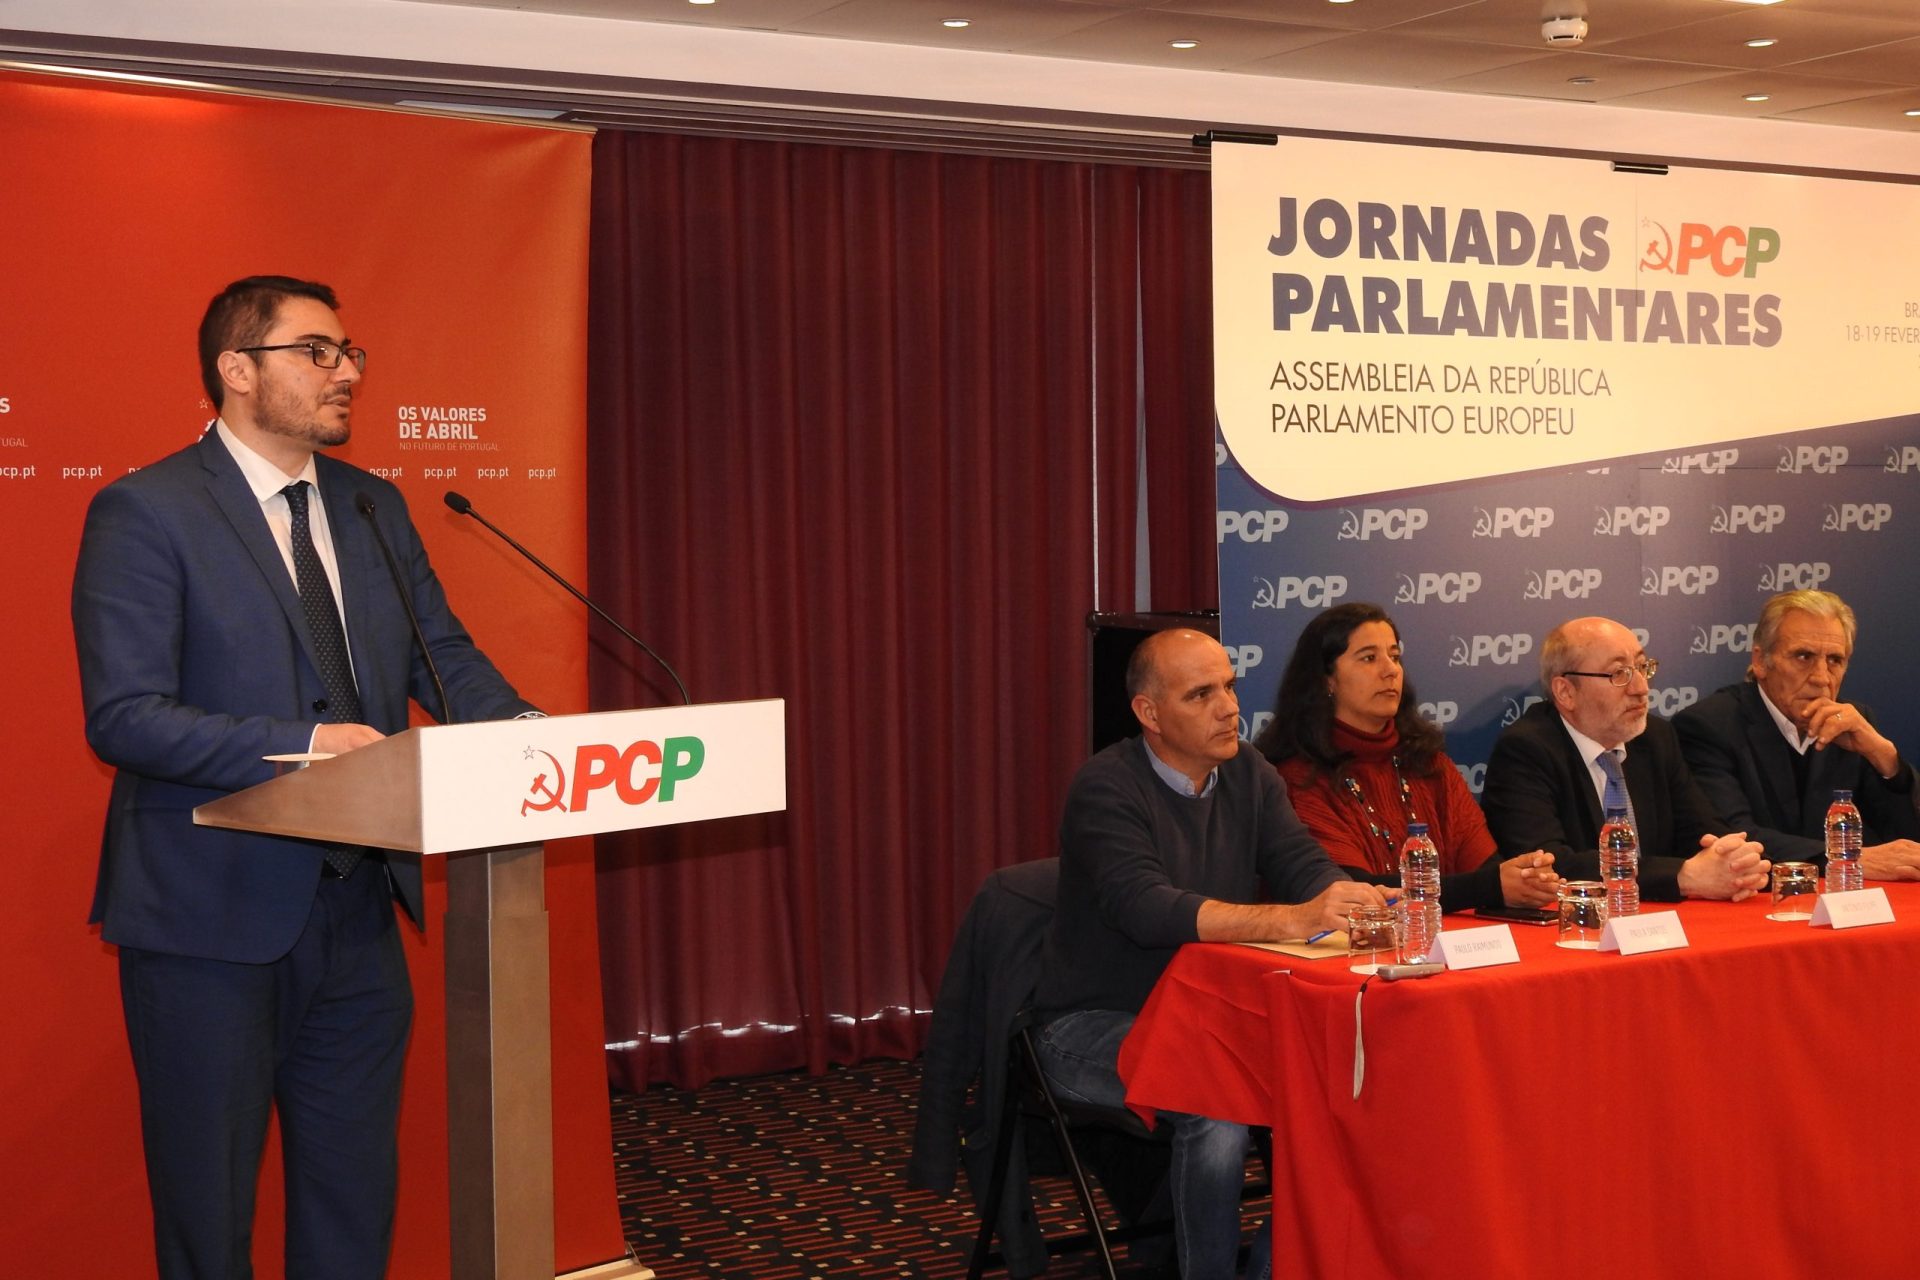 João Oliveira critica “política de direita do PS, PSD e CDS”